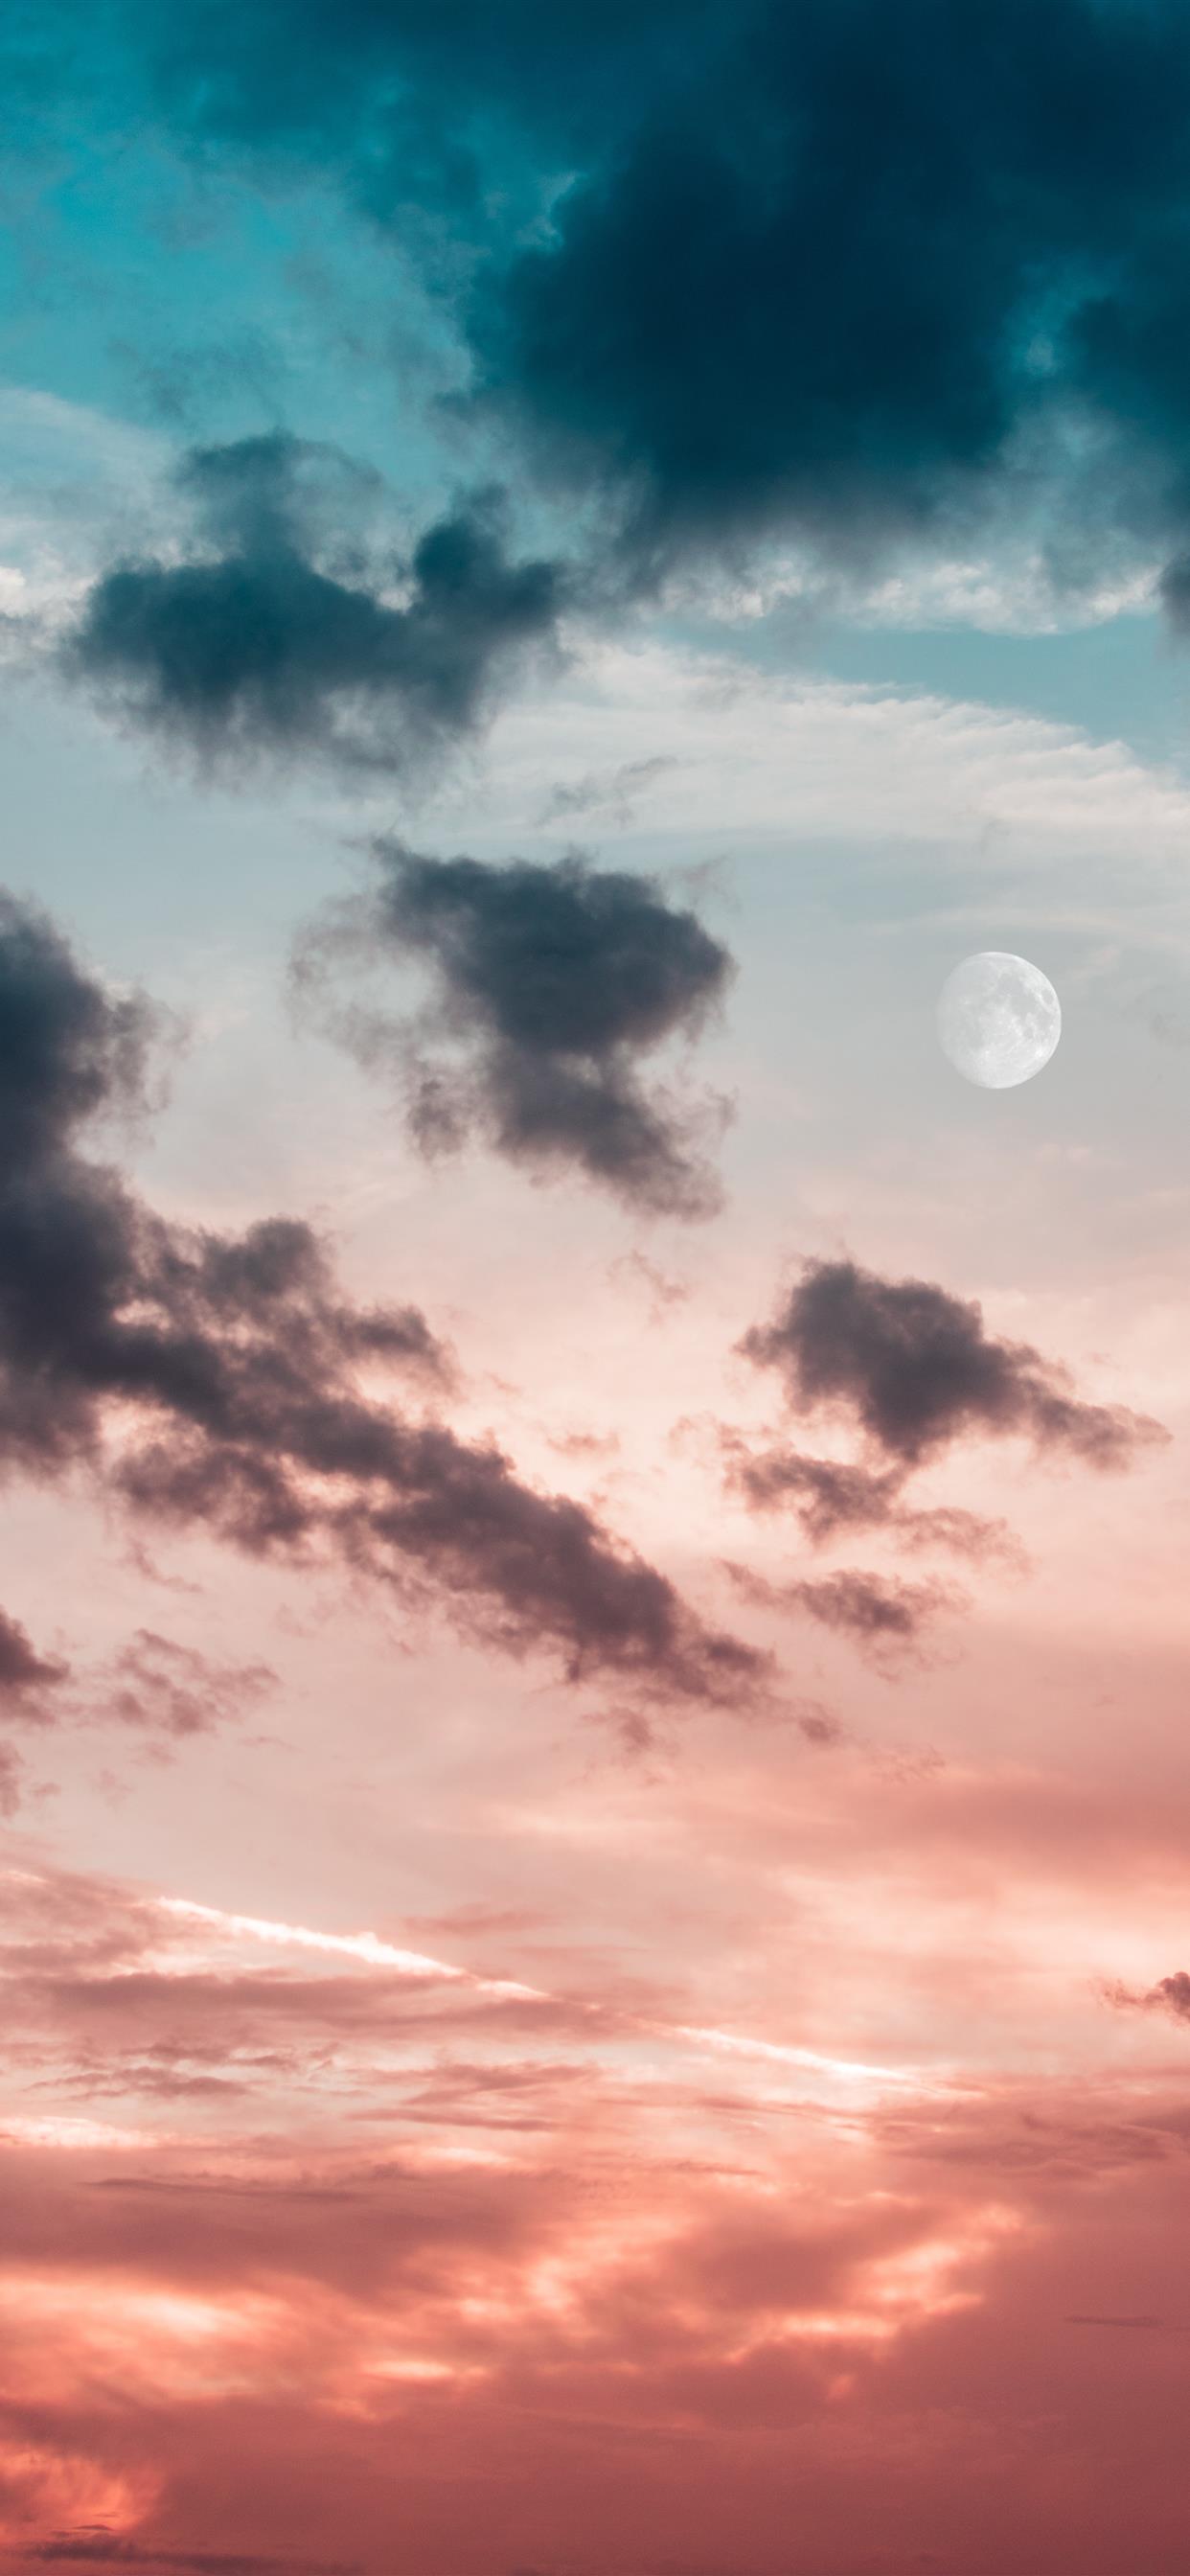 モバイル用の月の壁紙,空,雲,昼間,残照,雰囲気